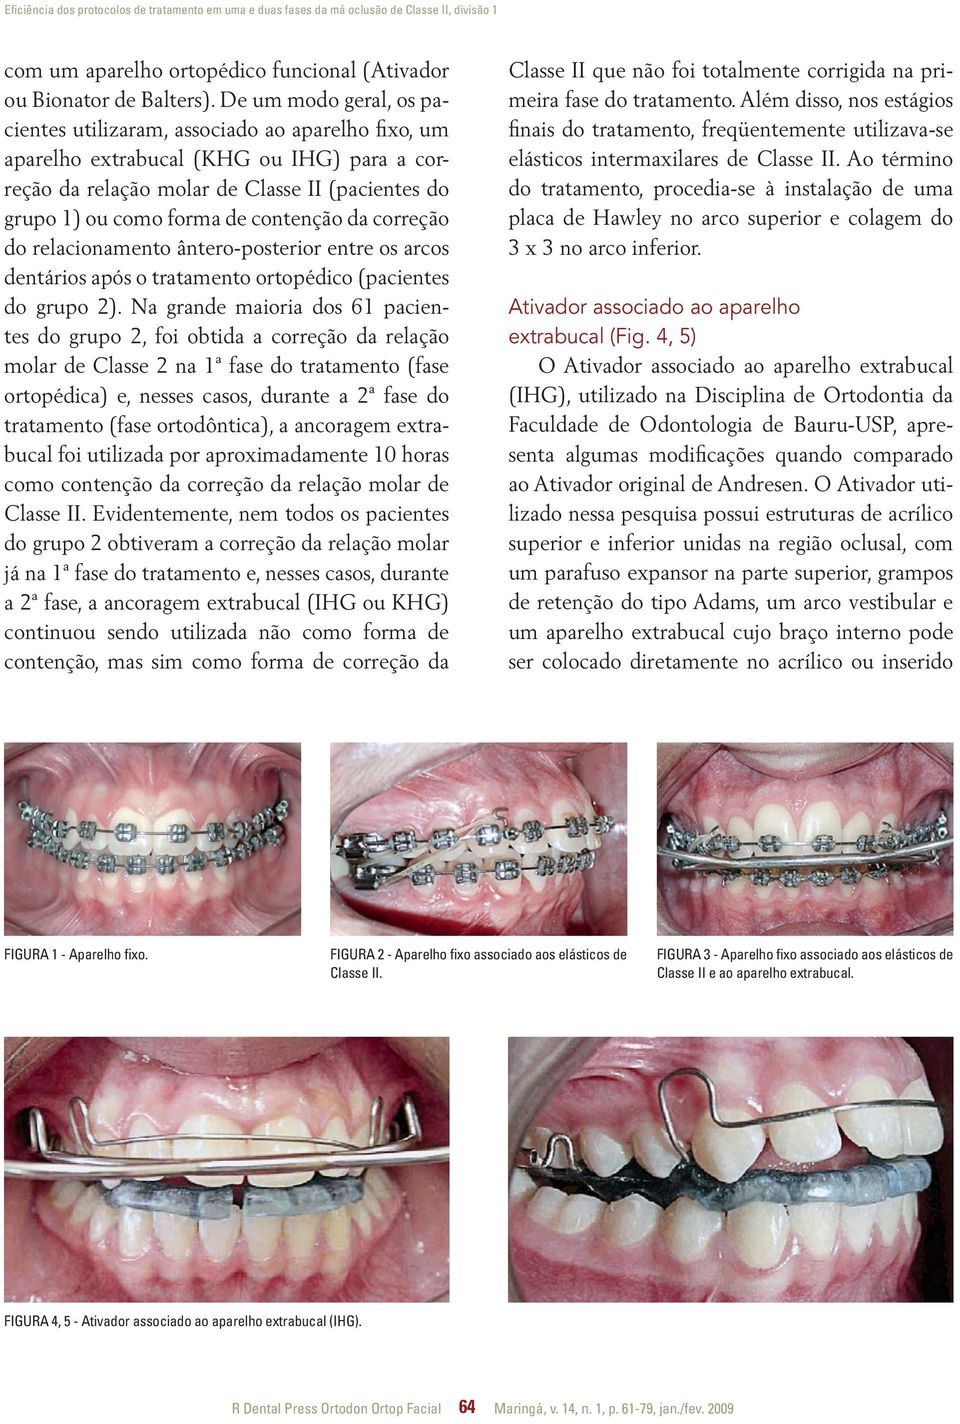 contenção da correção do relacionamento ântero-posterior entre os arcos dentários após o tratamento ortopédico (pacientes do grupo 2).